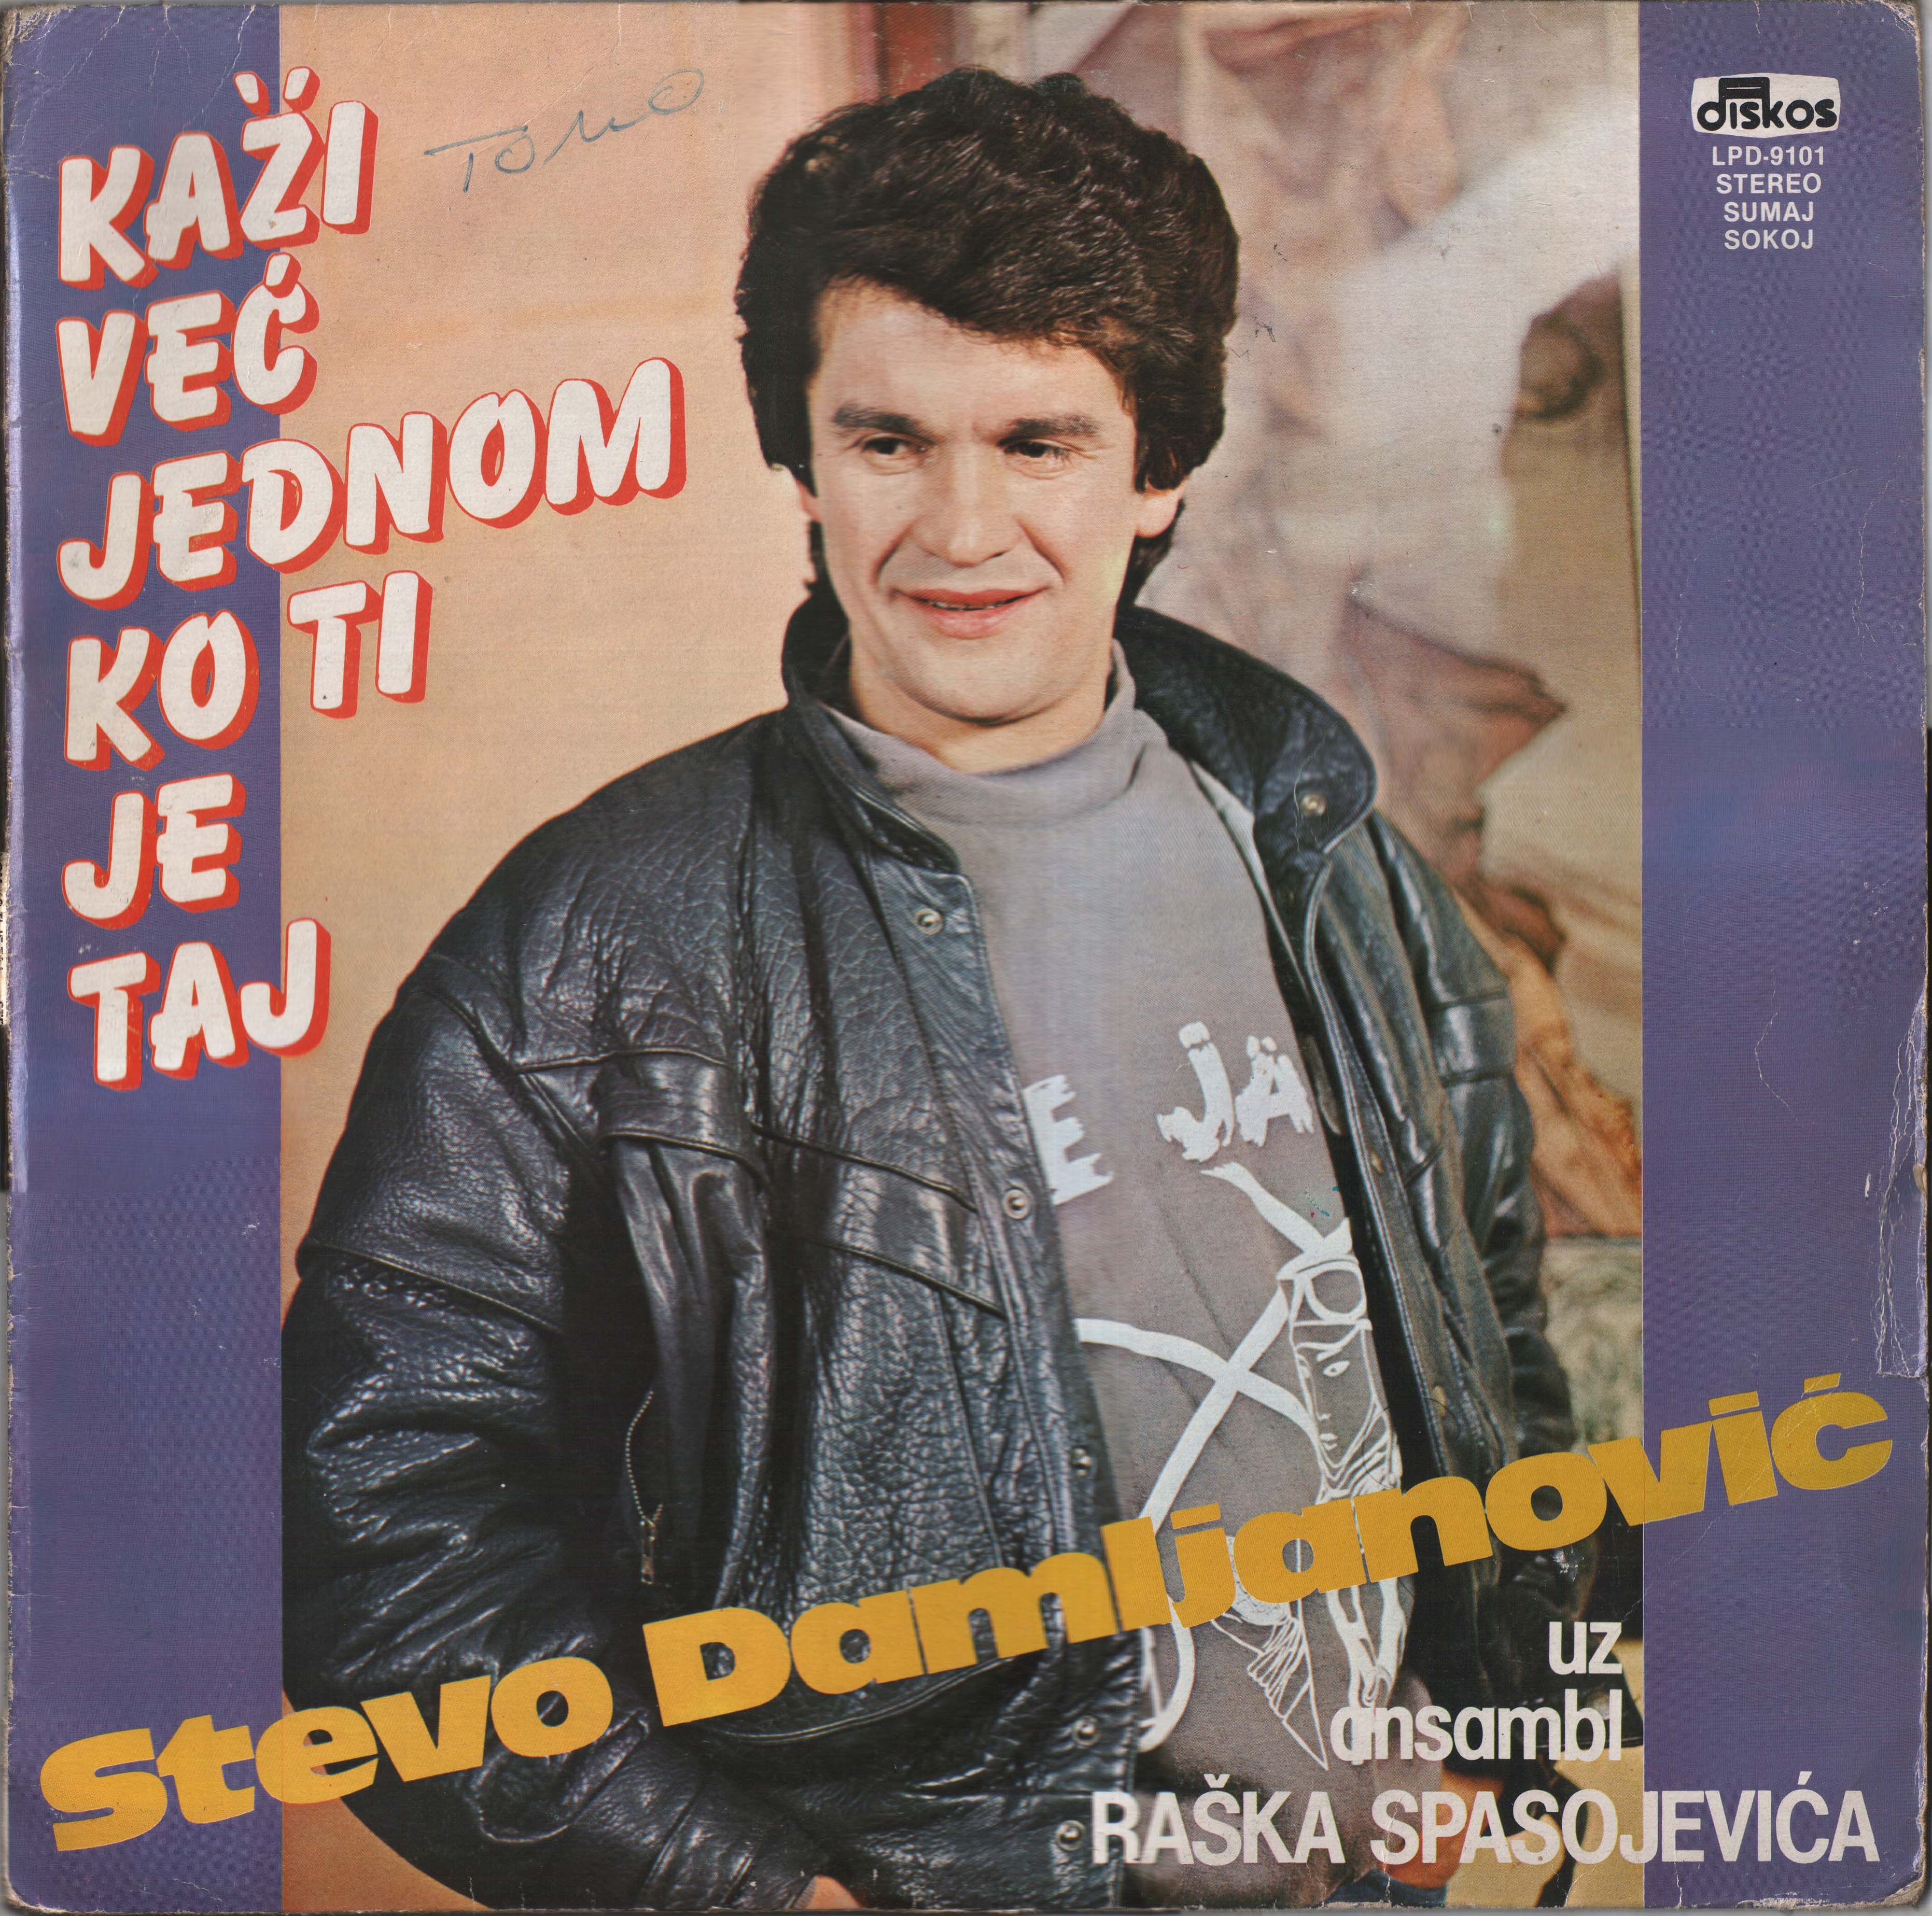 Stevo Damljanovic 1985 P